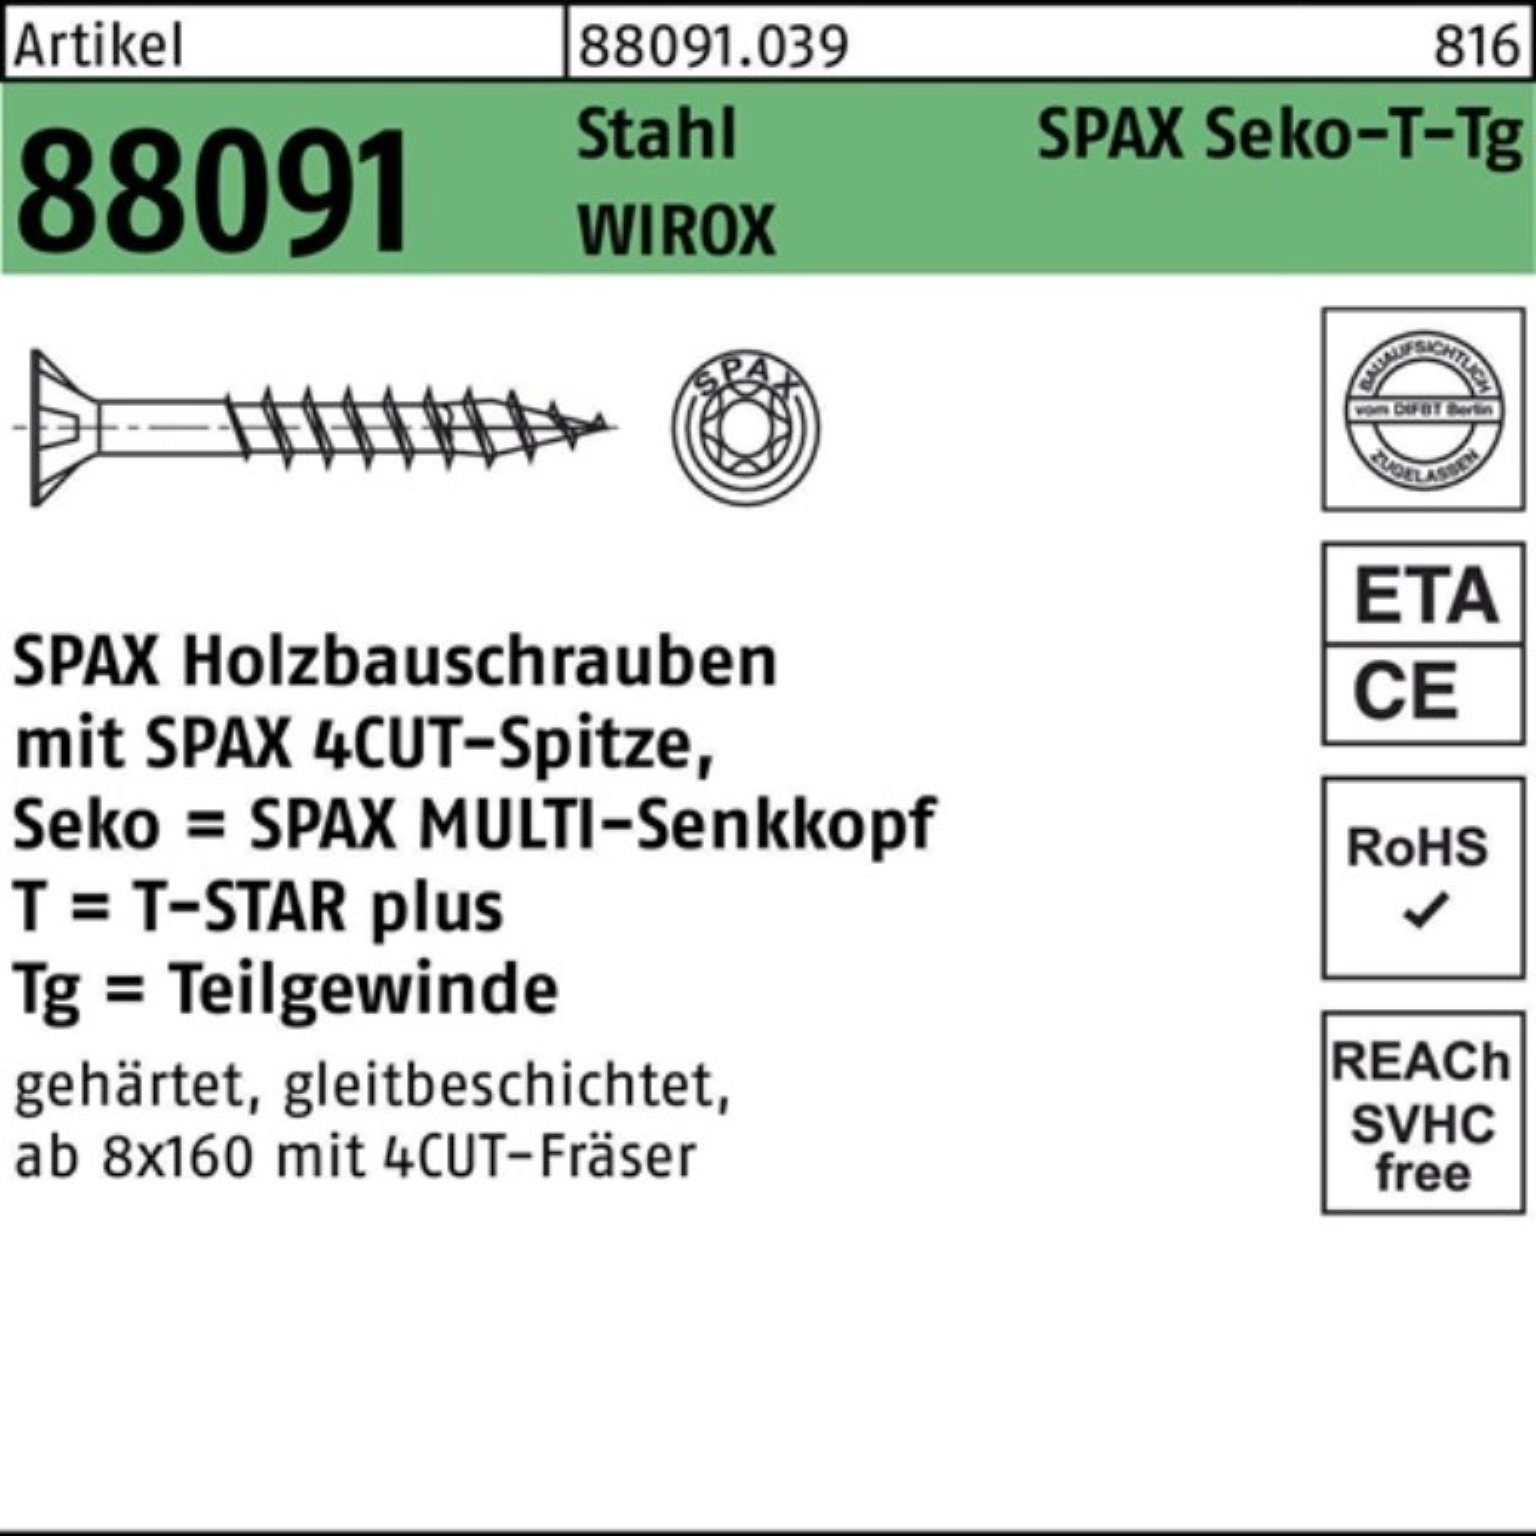 SPAX Schraube 100er Pack Schraube R 88091 SEKO/T-STAR TG 10x 360/80-T50 Stahl WIROX